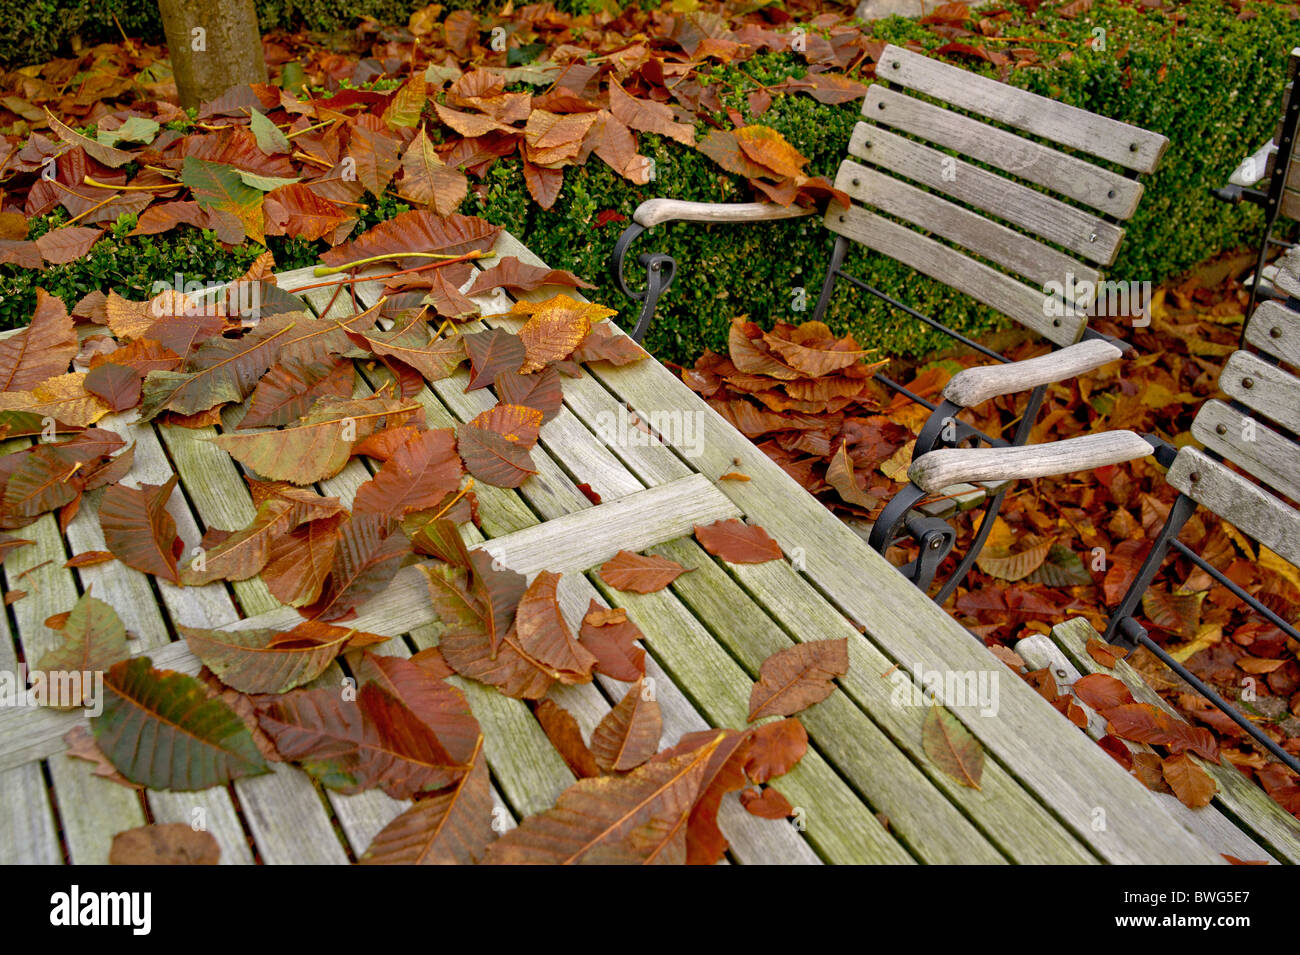 Tavolo e sedie in un giardino della birra, coperto con foglie; Tisch und Stühle in einem Biergarten, bedeckt mit Laub Foto Stock